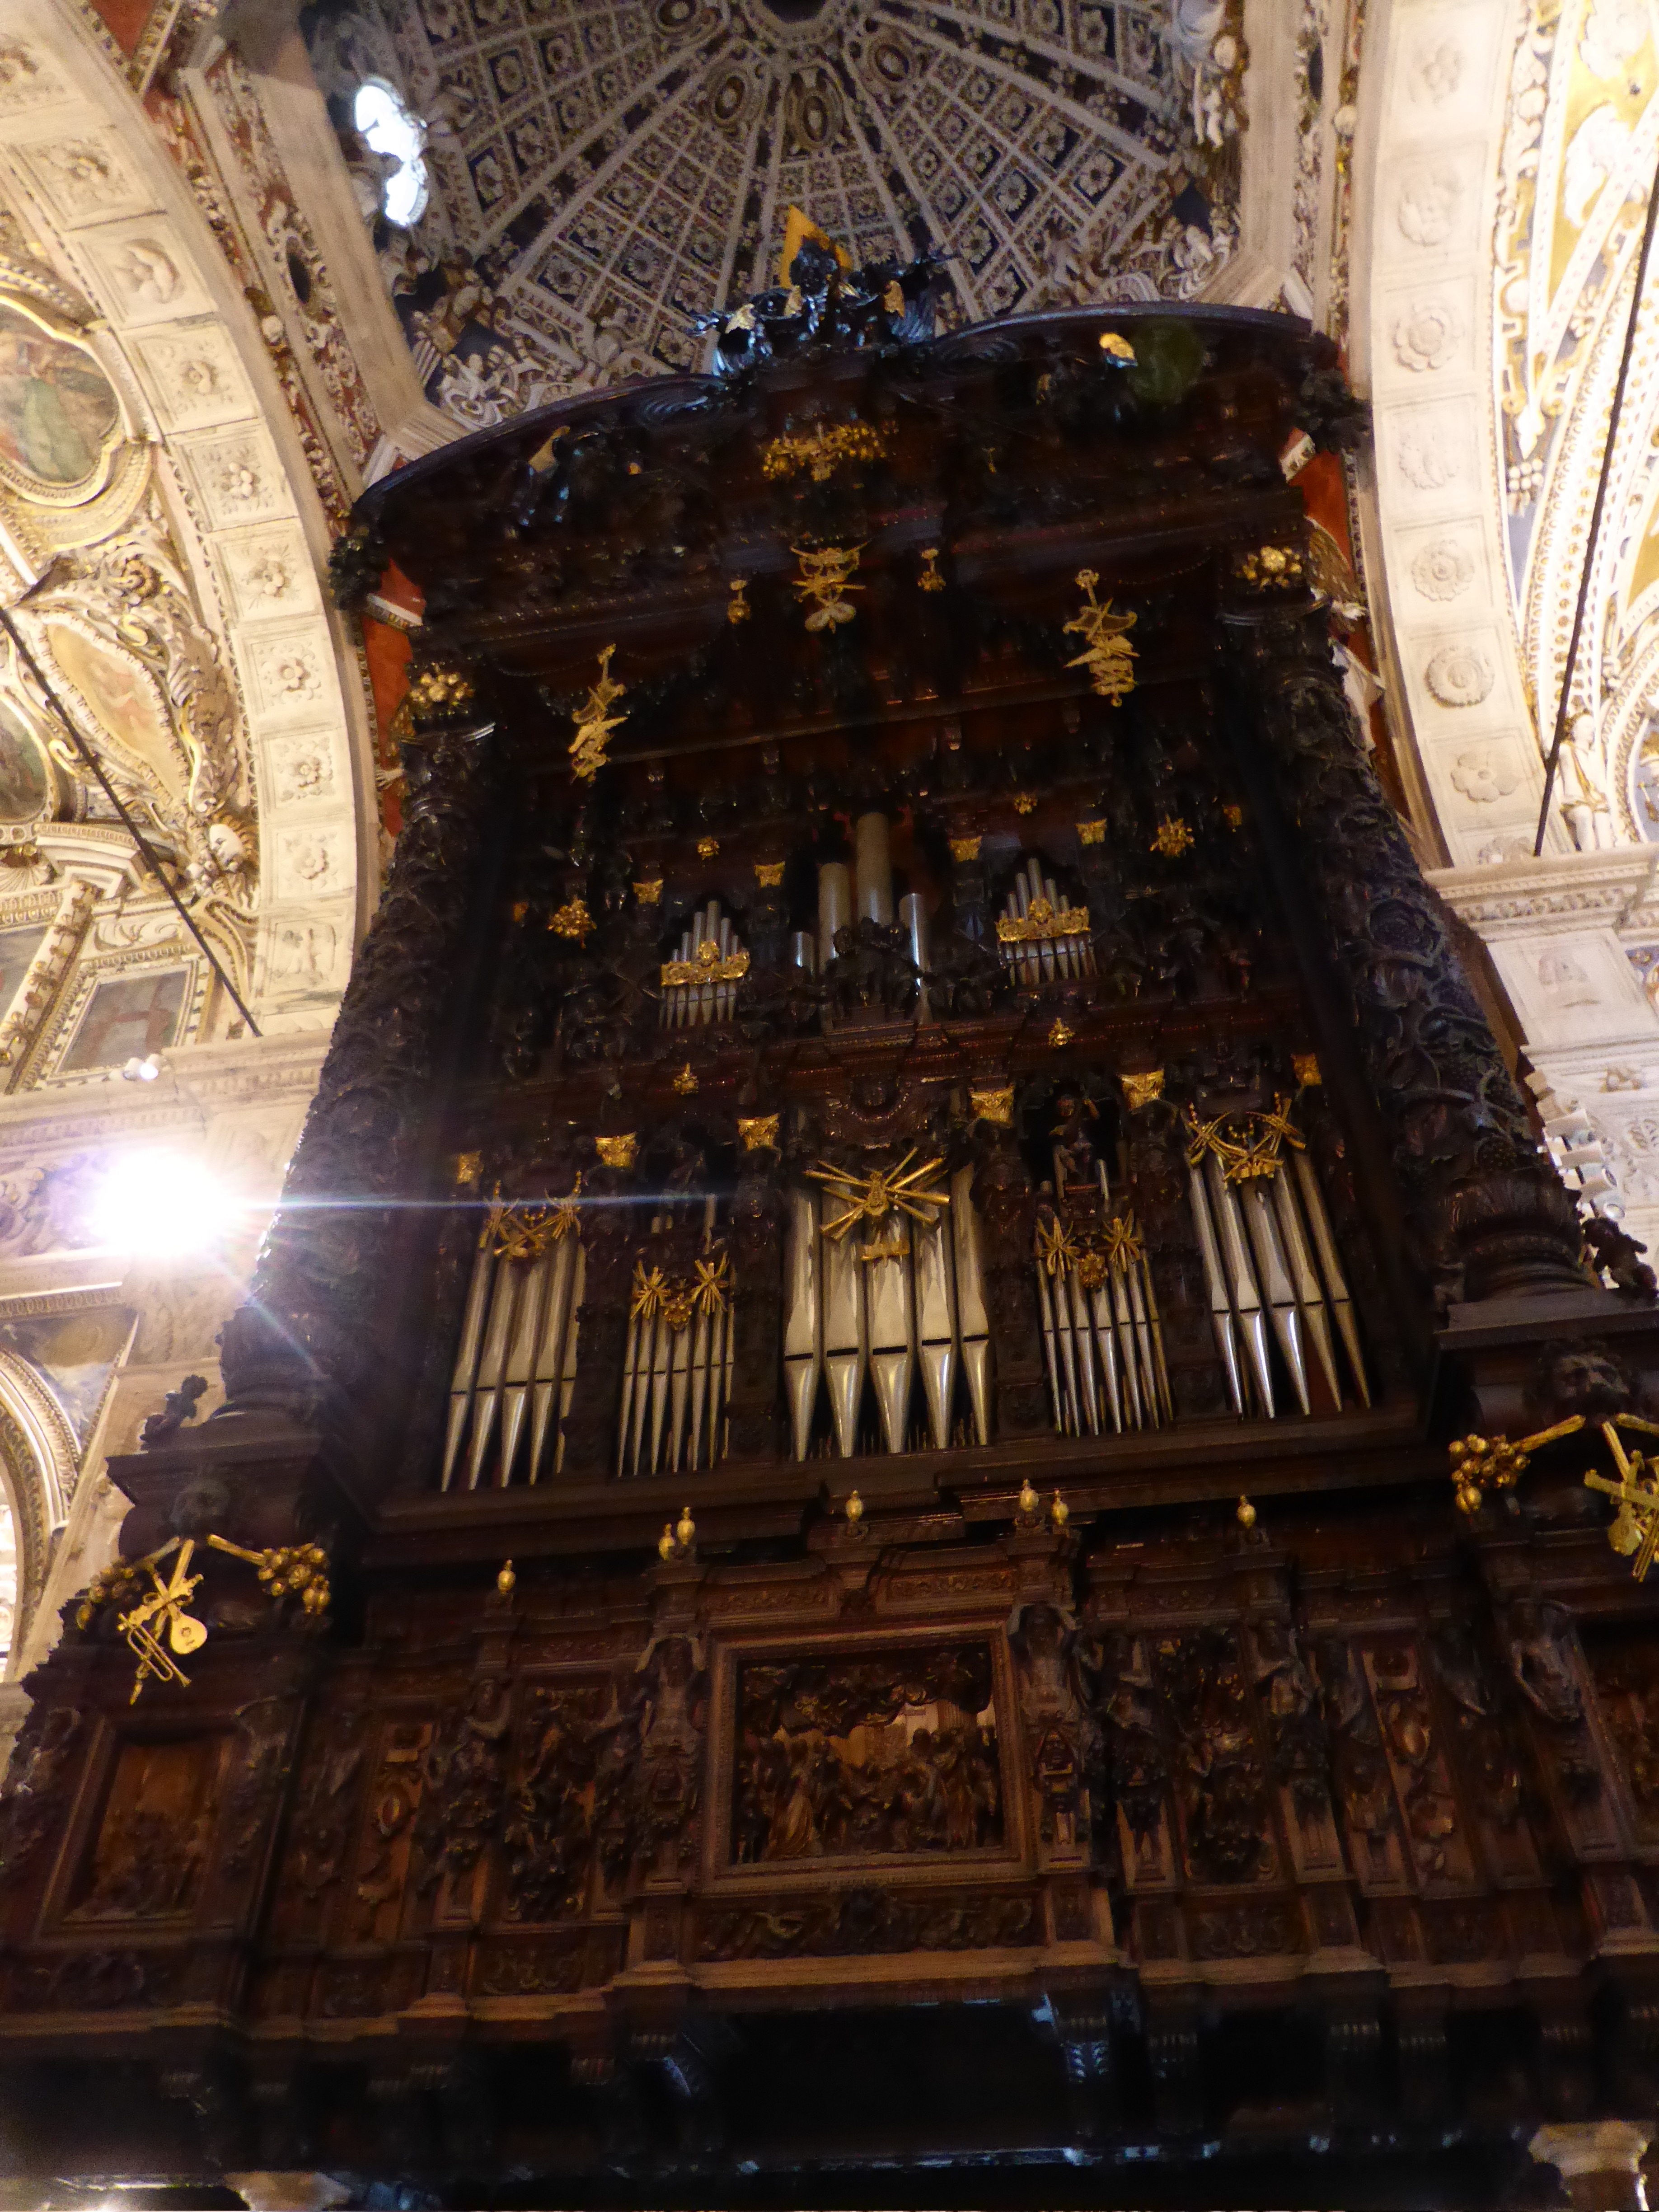 Die mit reichen Schnitzereien aus dem 17. Jahrhundert verzierte Orgel der Madonna di Tirano besitzt über 2000 Pfeifen und nimmt das gesamte linke Querschiff ein.